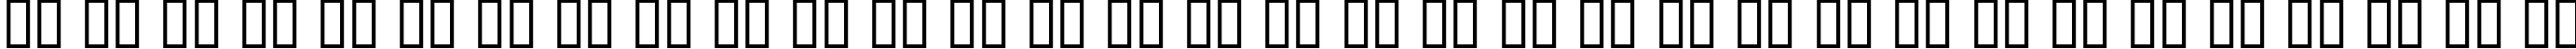 Пример написания русского алфавита шрифтом Berliner